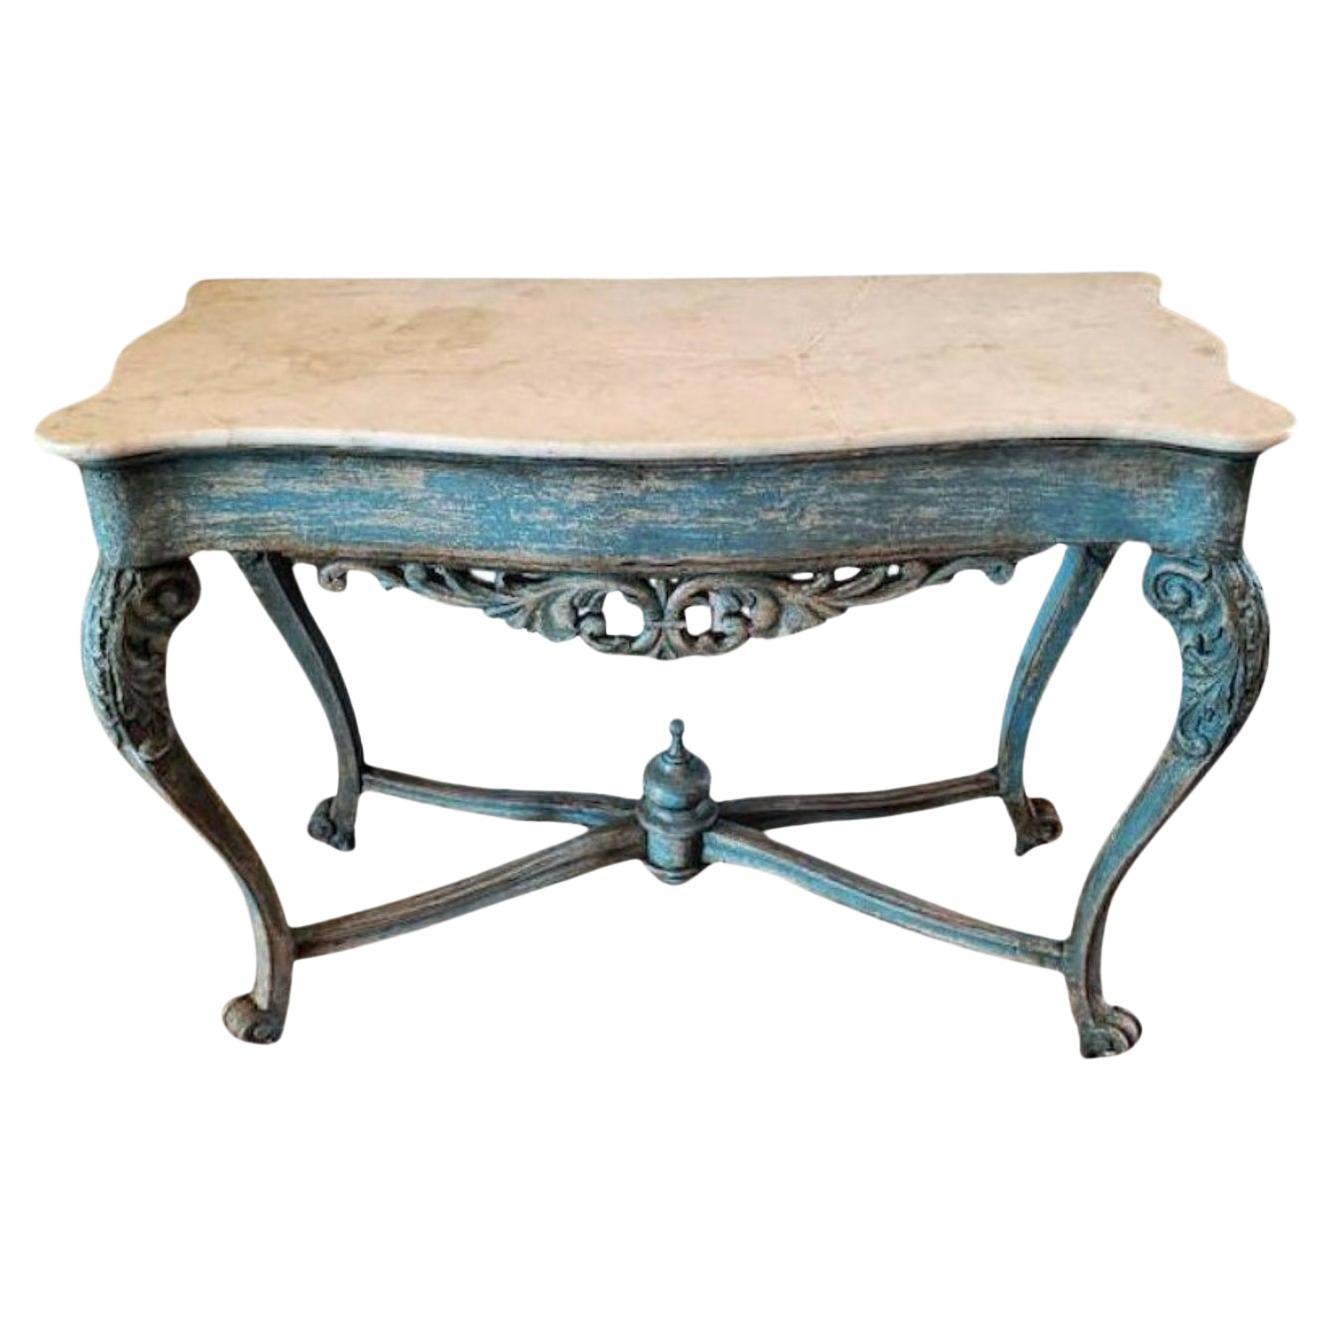 Table console rococo de style Louis XV du 18ème/19ème siècle